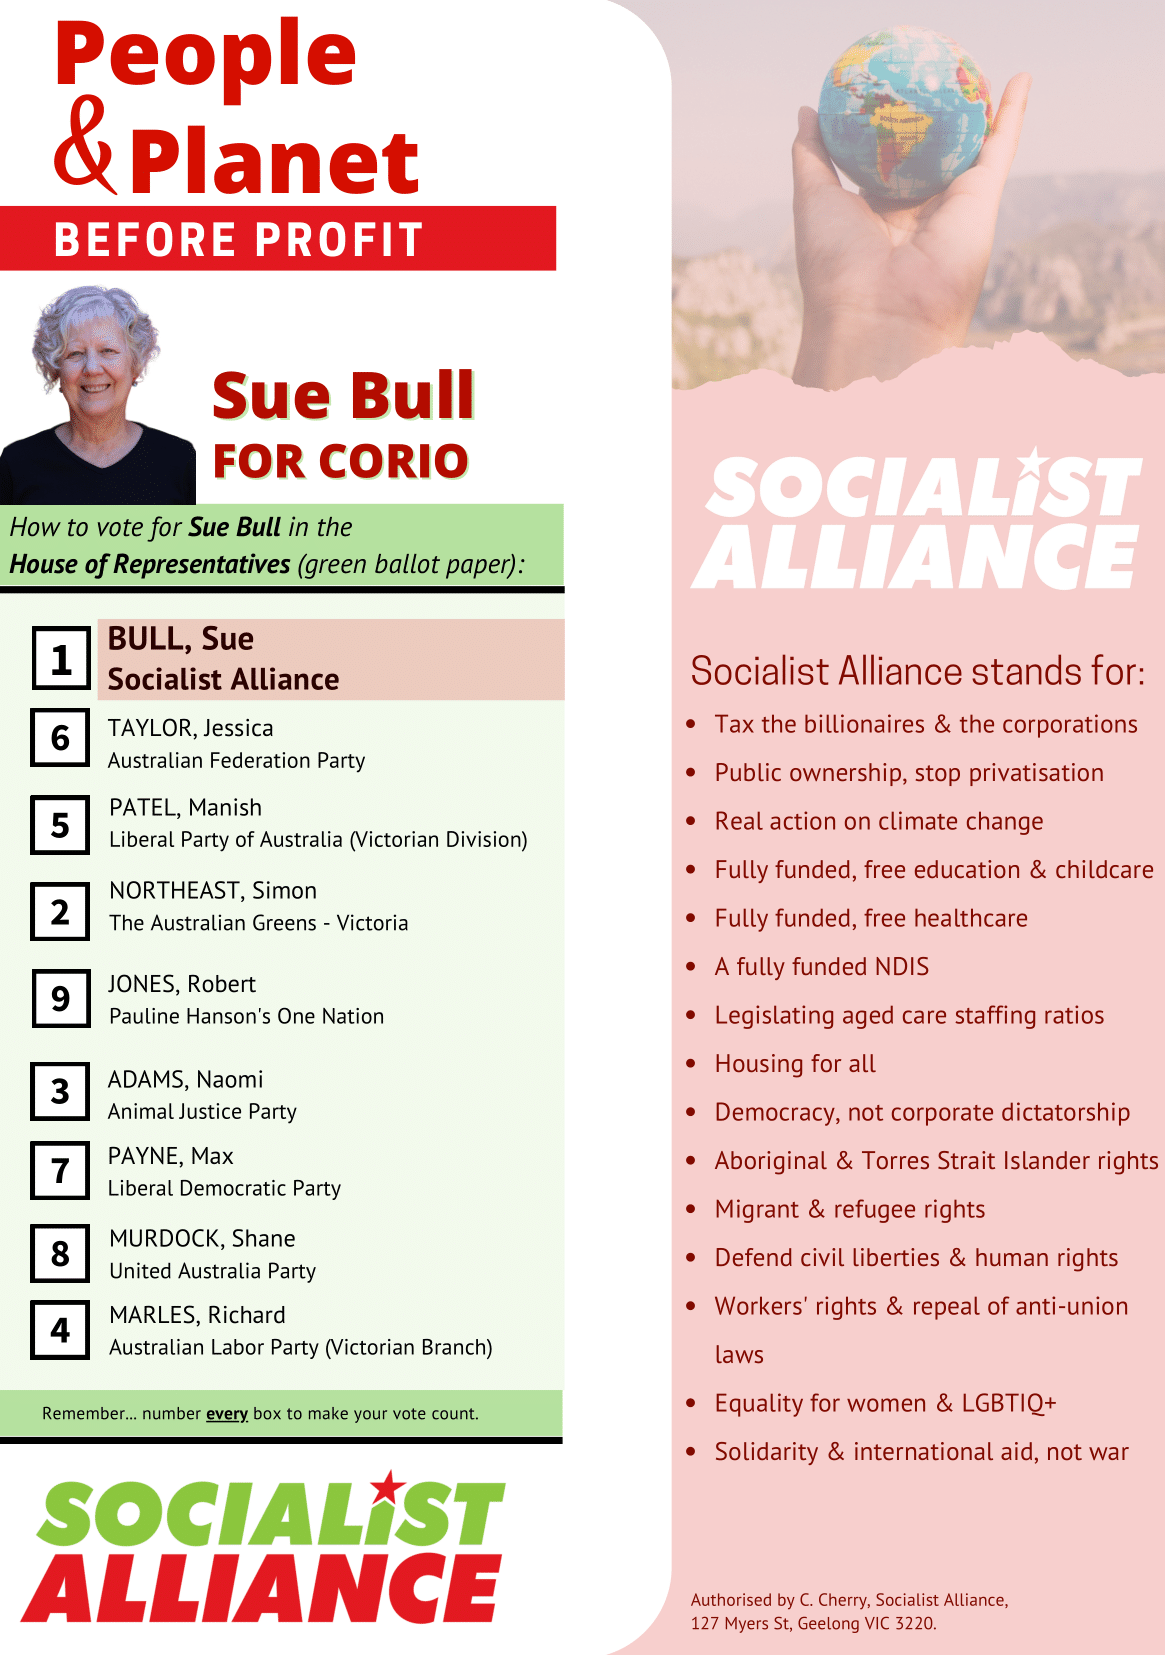 How to vote Sue Bull, Socialist Alliance for Corio in Victoria 2022